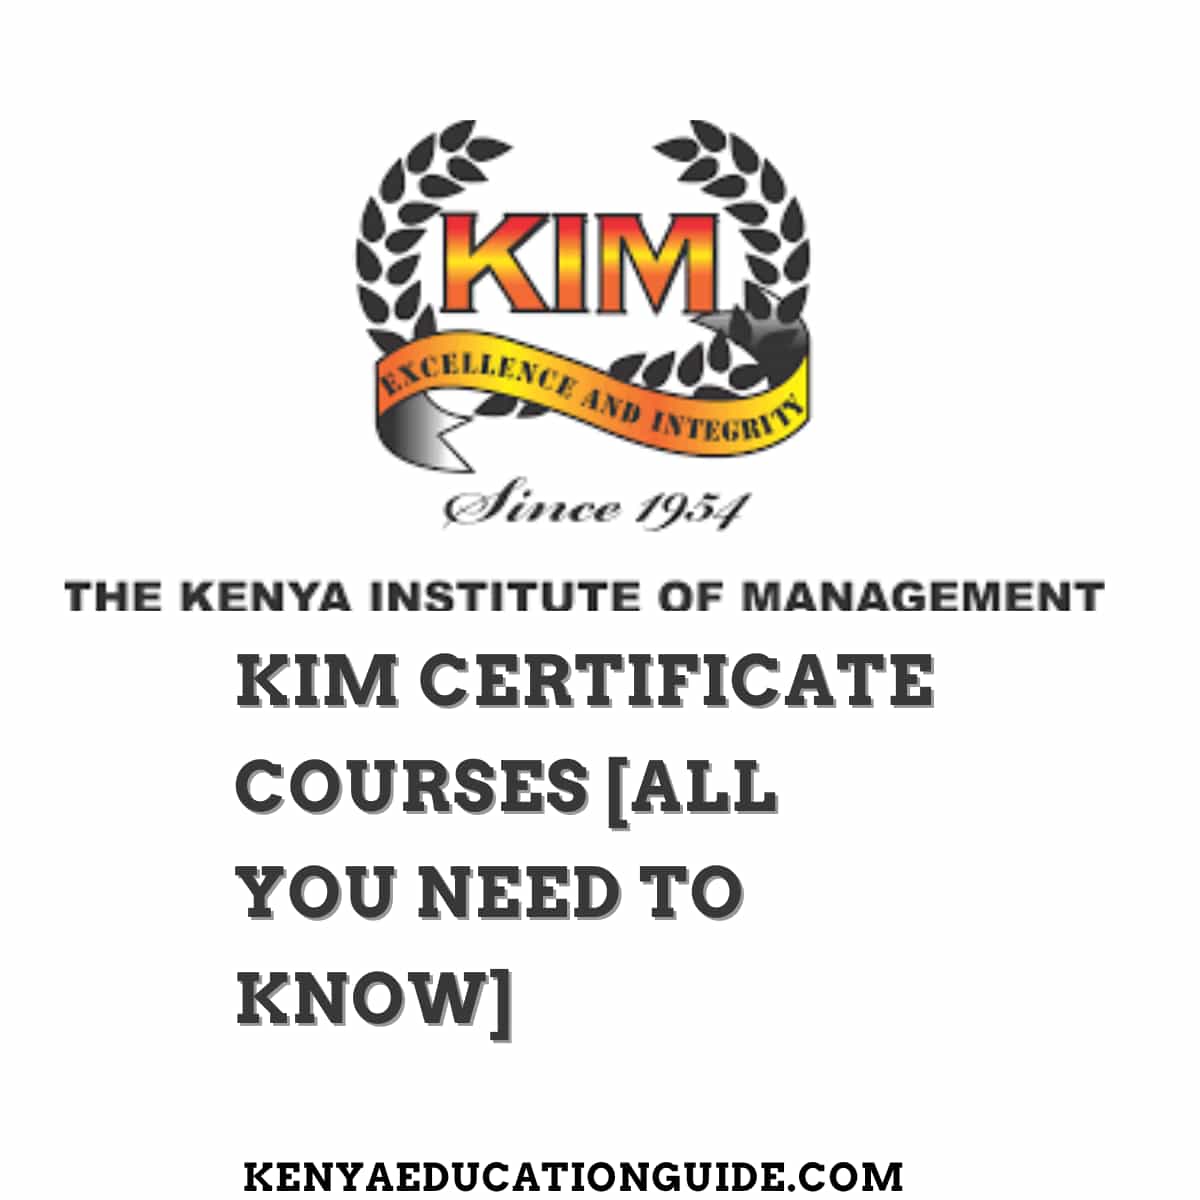 KIM Certificate Courses